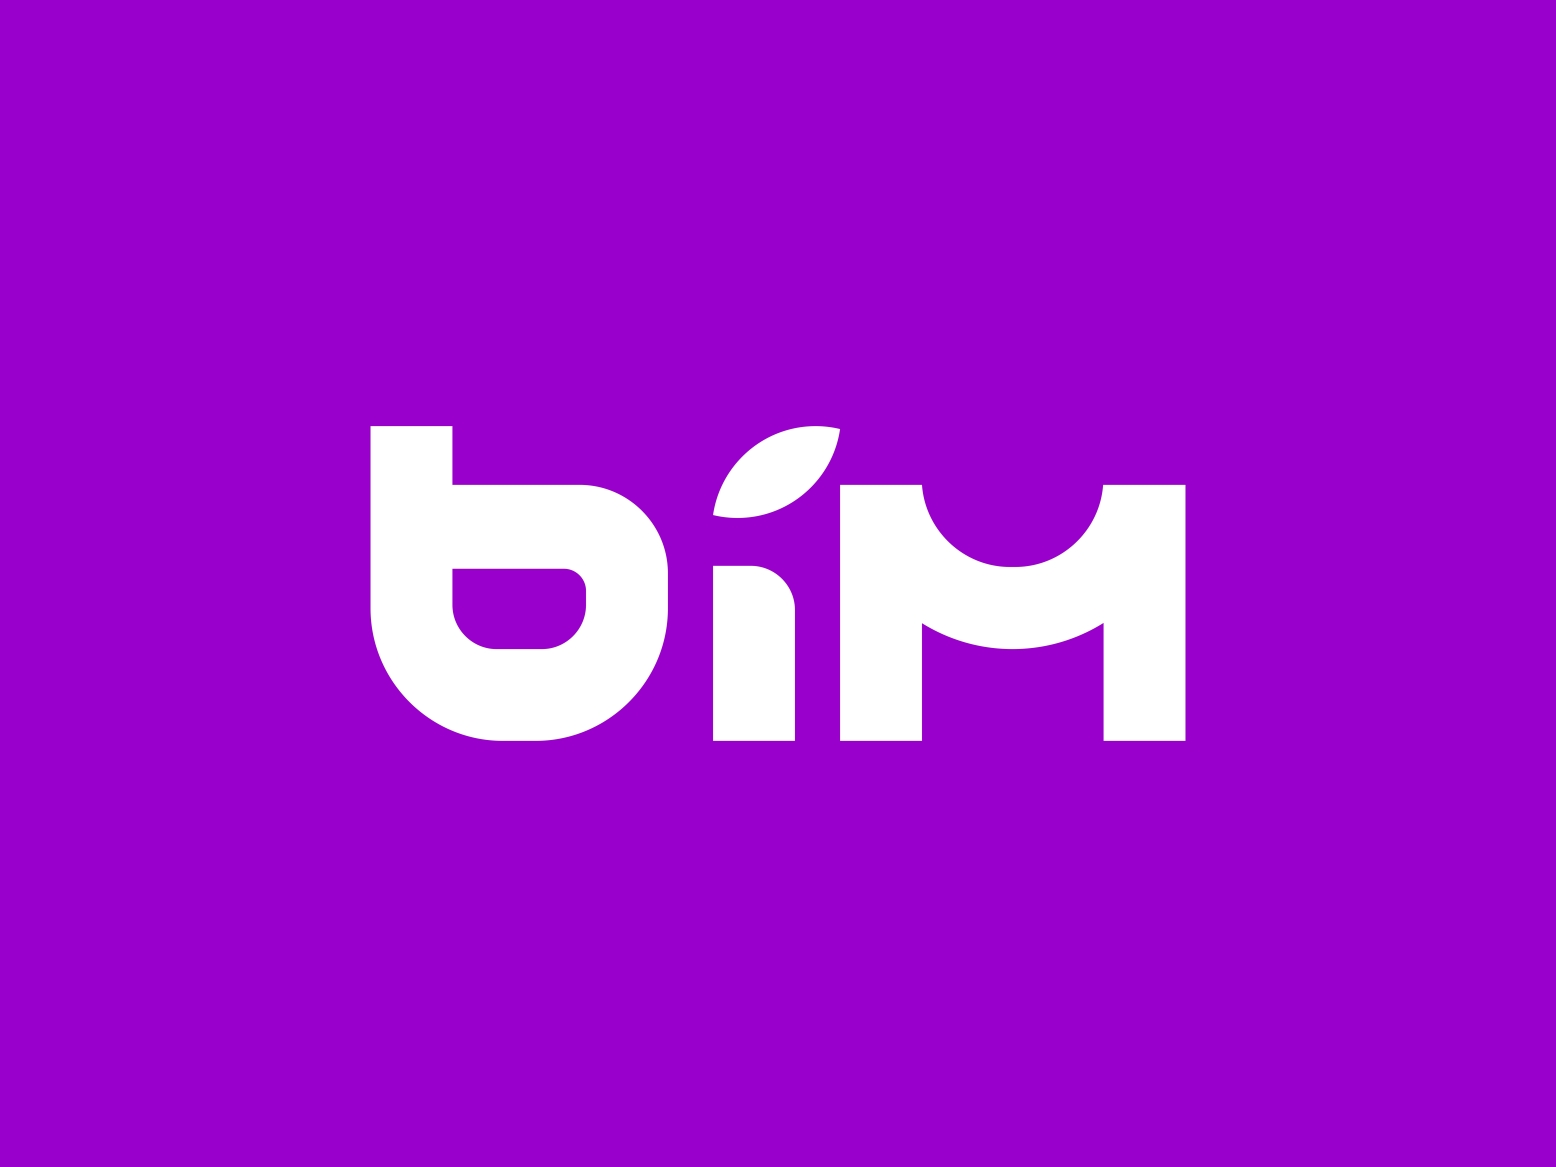 BIM e-COM & CRYPTO by Omotola A. Busari on Dribbble